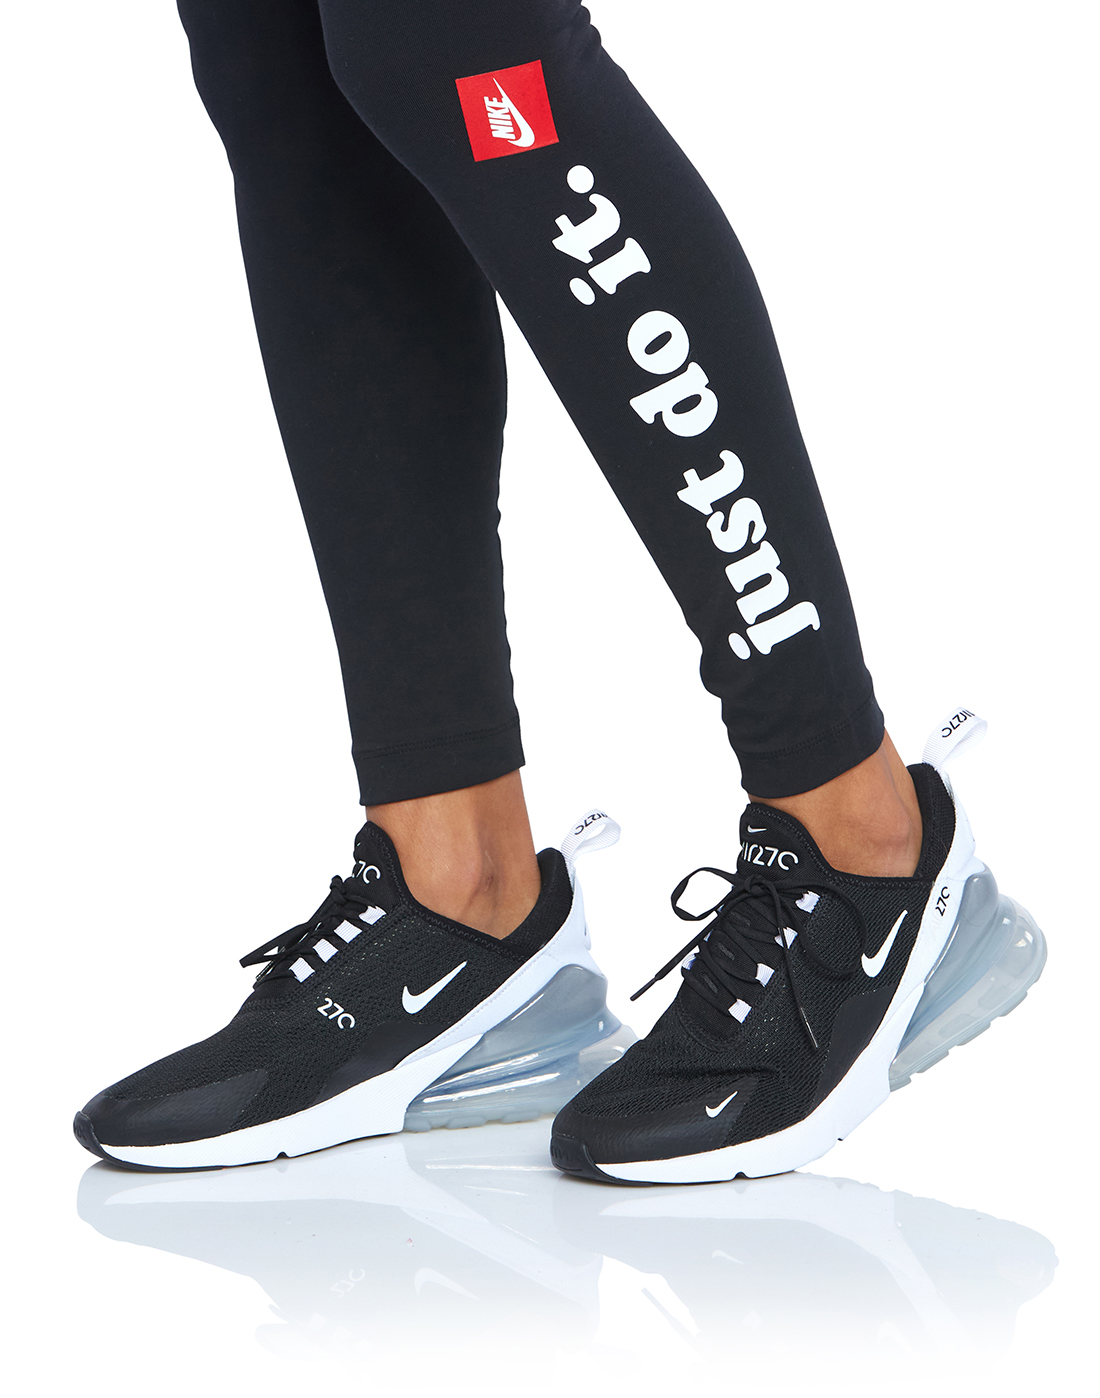 Nike Womens Club Leggings - Black